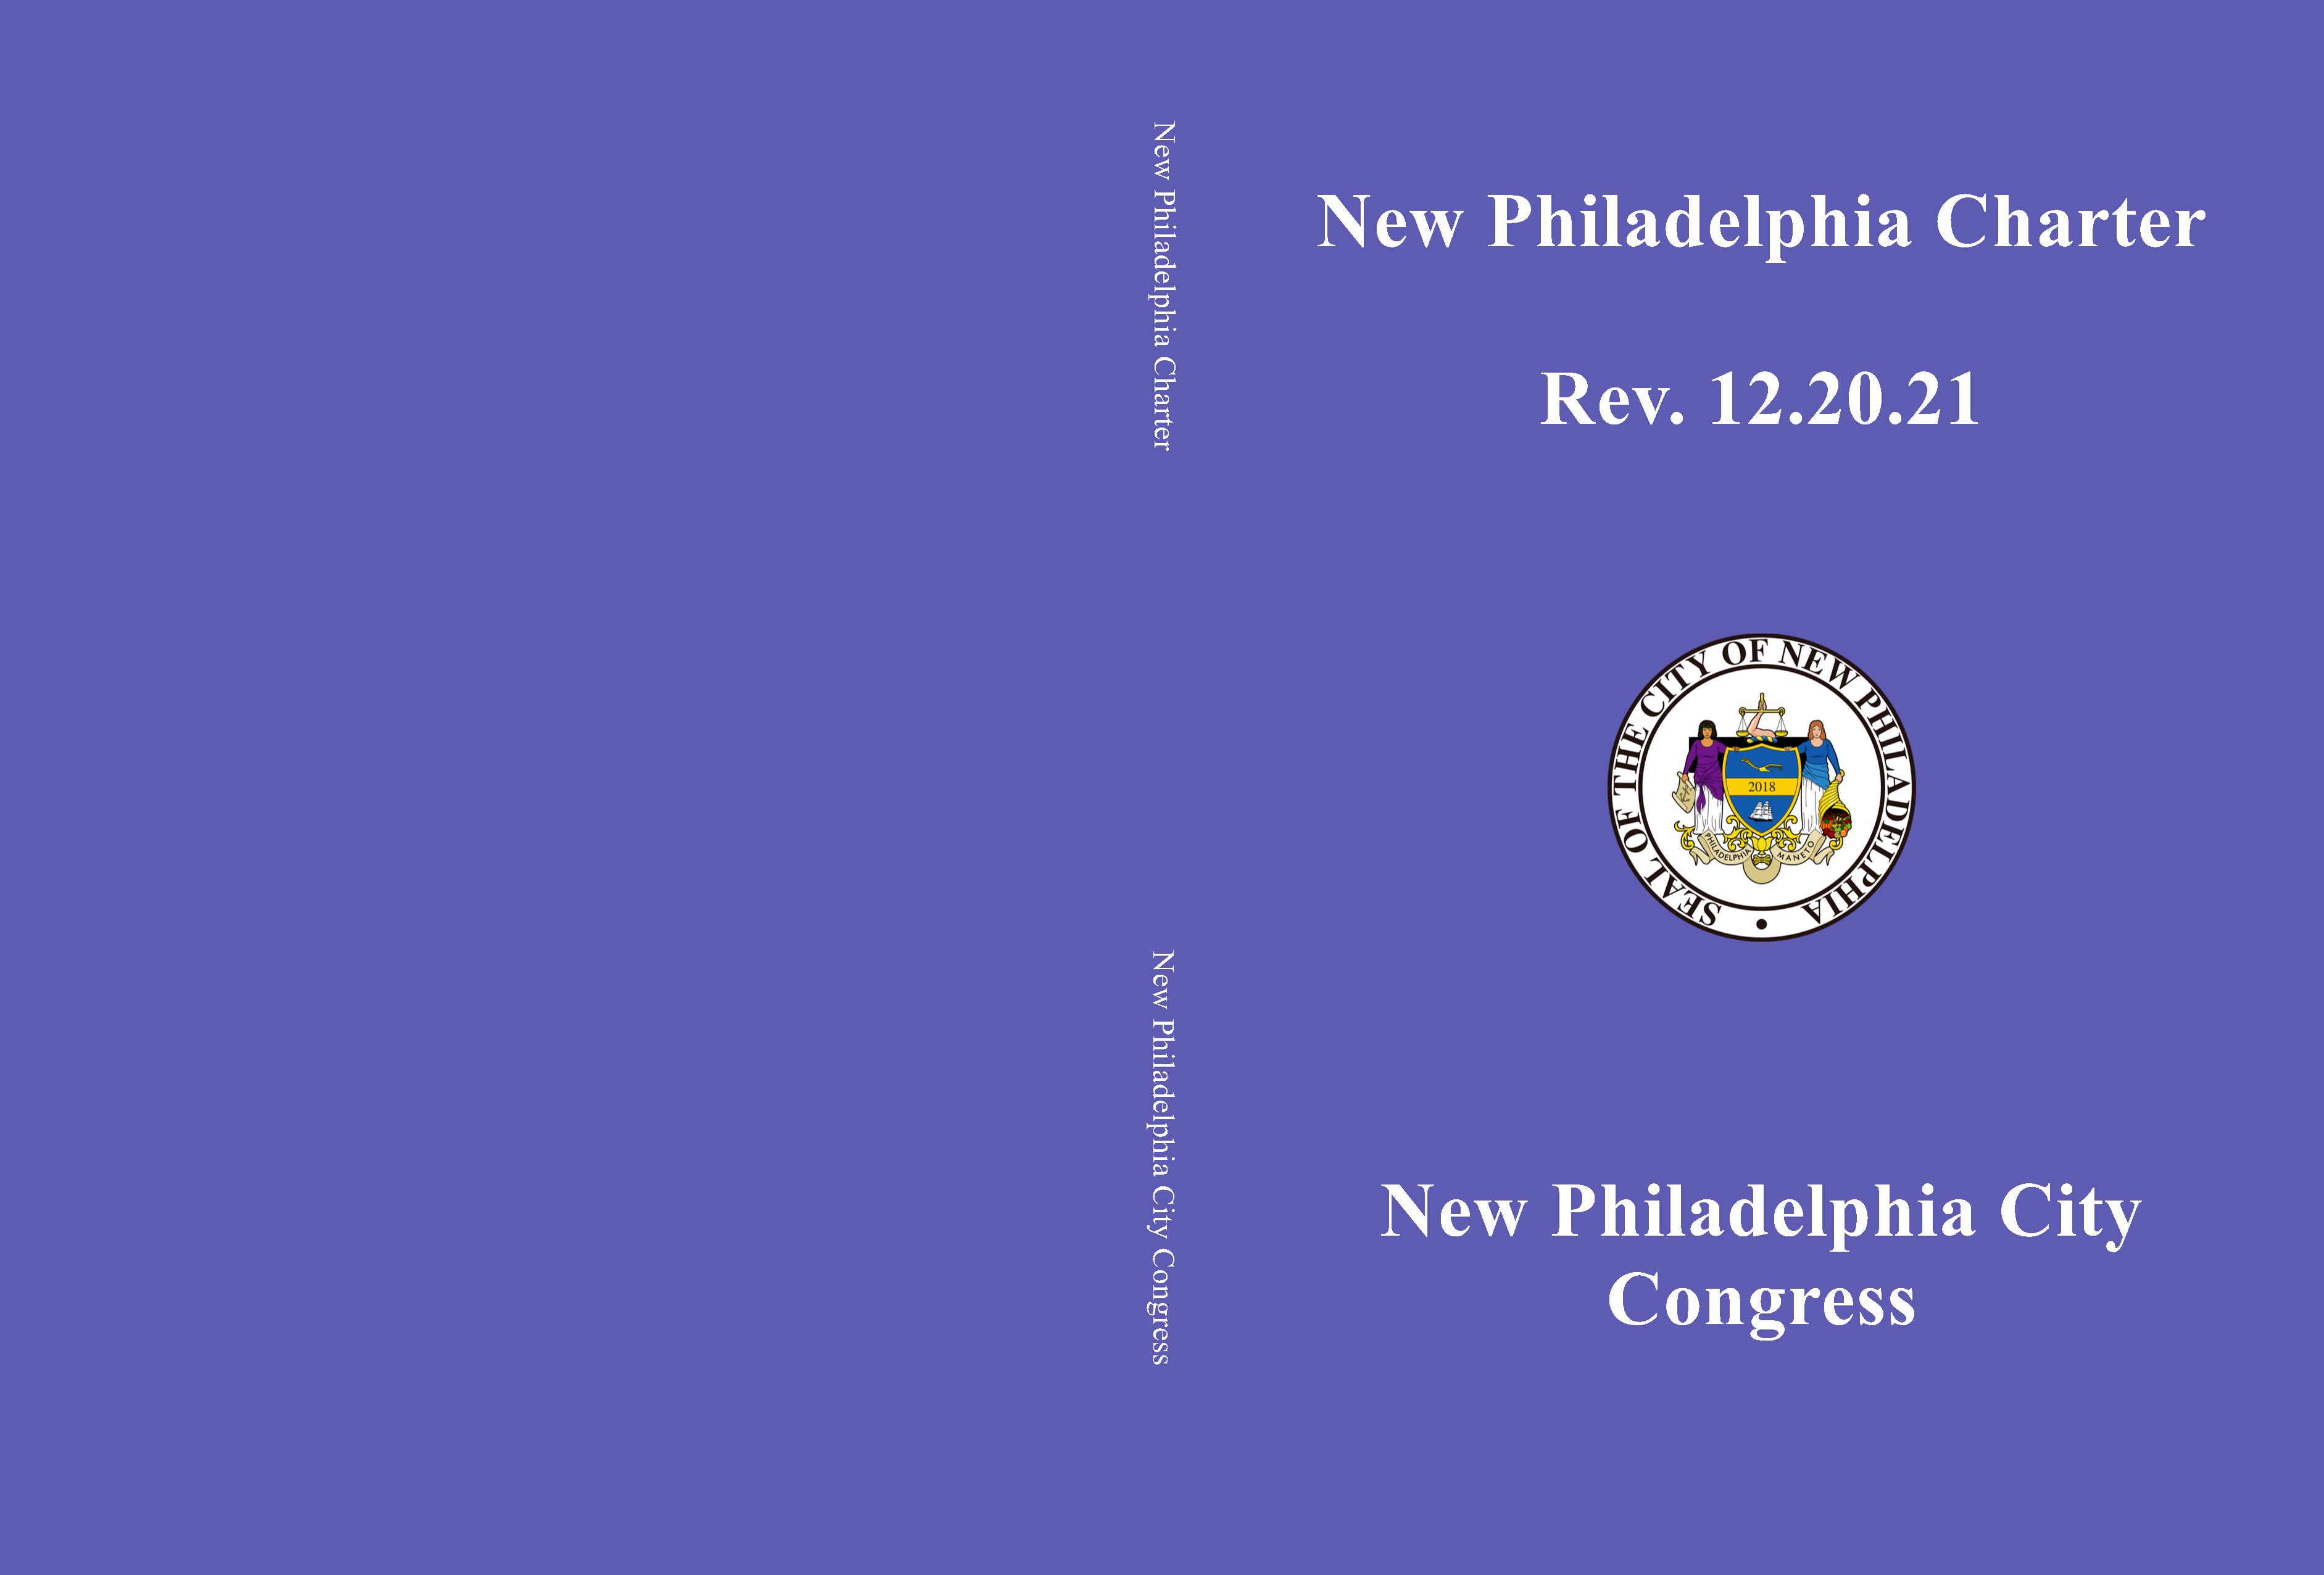 New Philadelphia Charter cover image